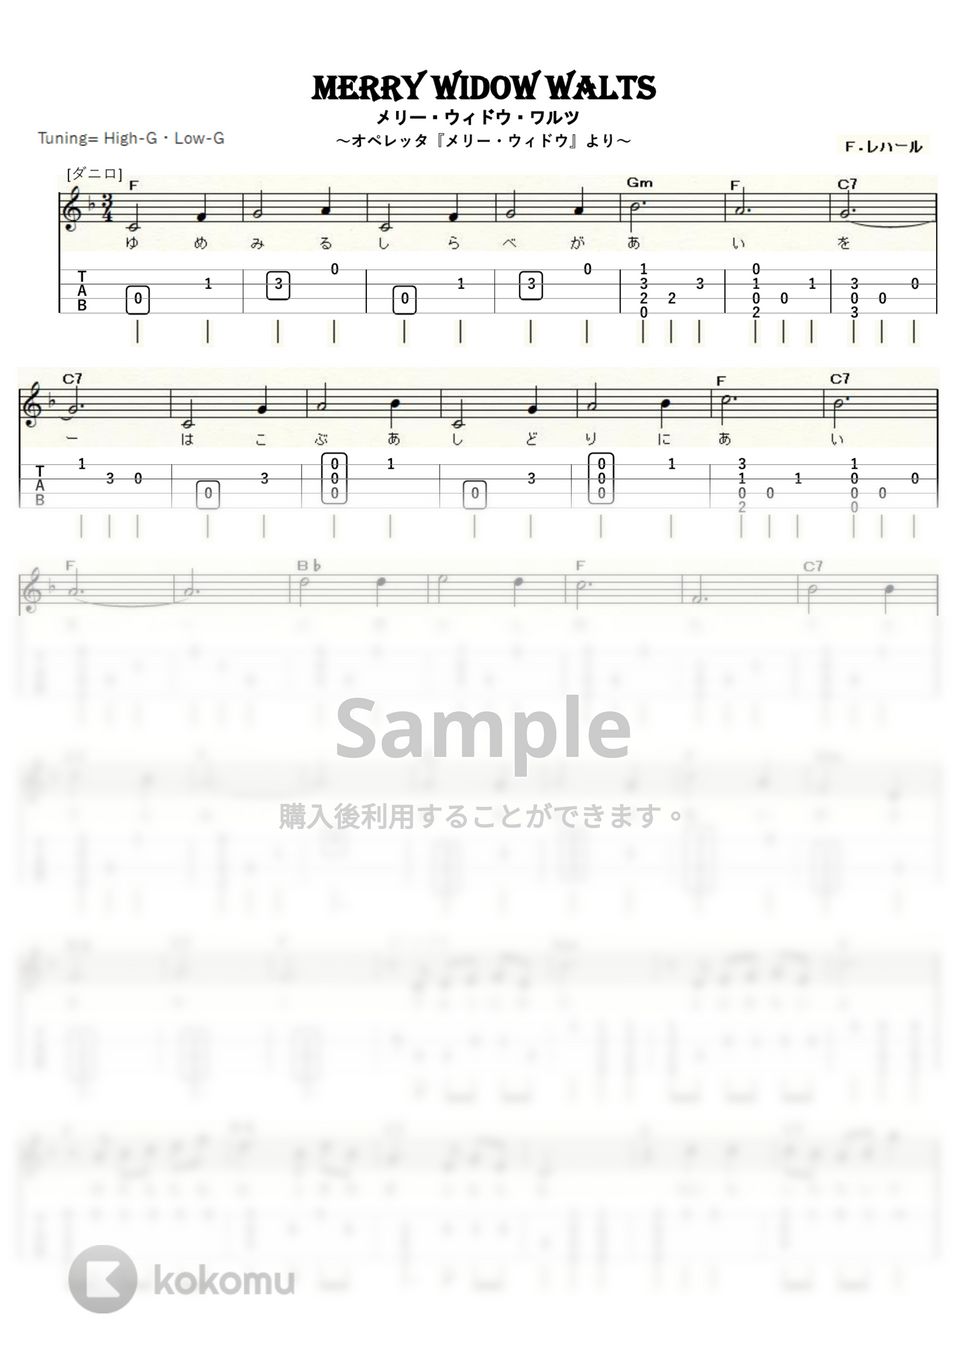 フランツ・リハール - メリー・ウィドウ・ワルツ (ウクレレソロ / High-G,Low-G / 初～中級) by ukulelepapa